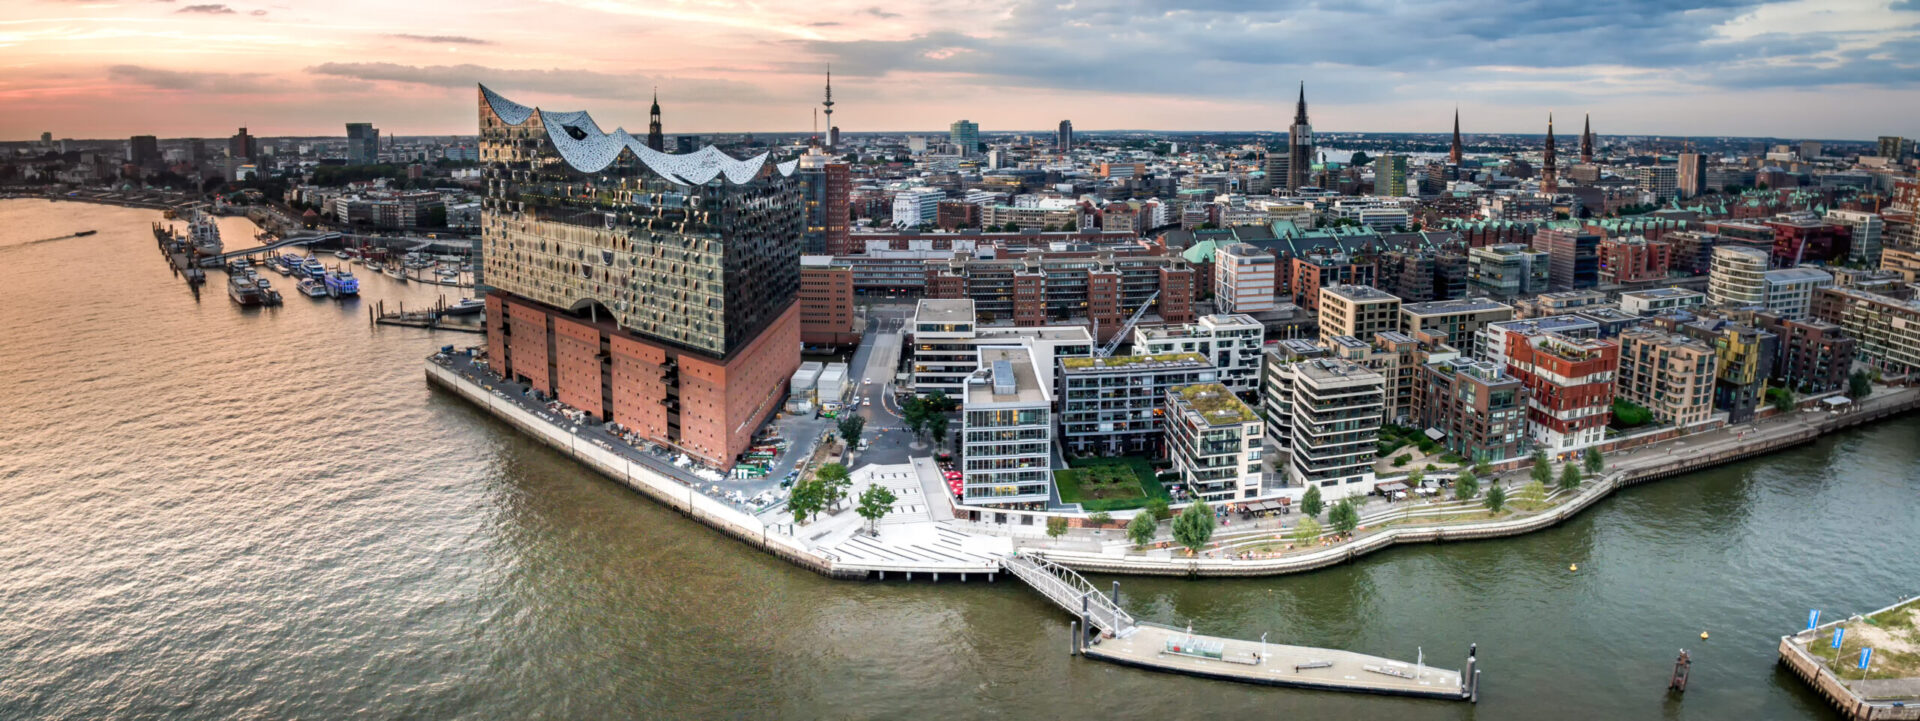 Solaranlage Pflicht, Hamburg klimaneutral bis 2050